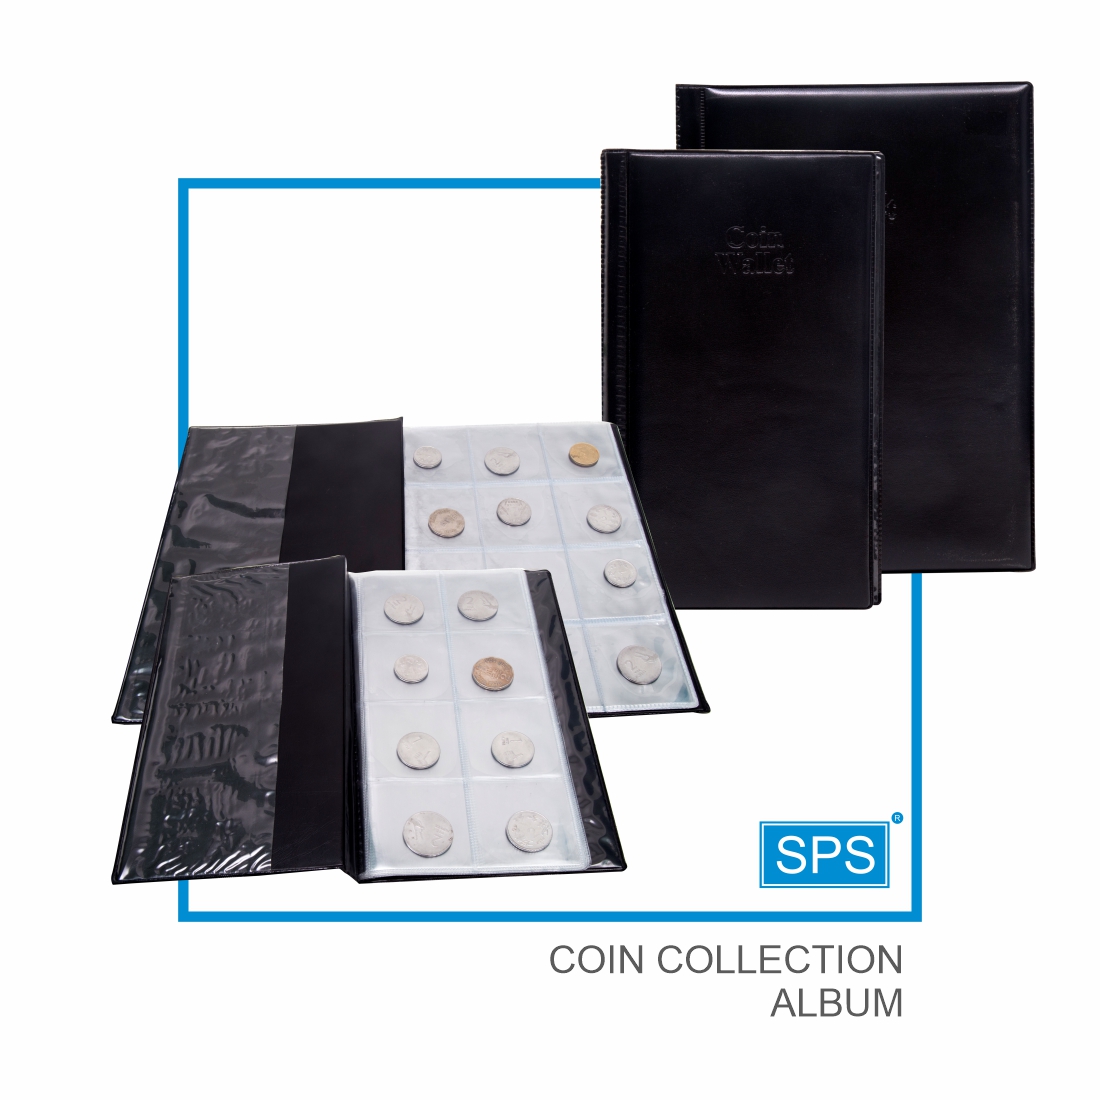 COIN COLLECTION ALBUM